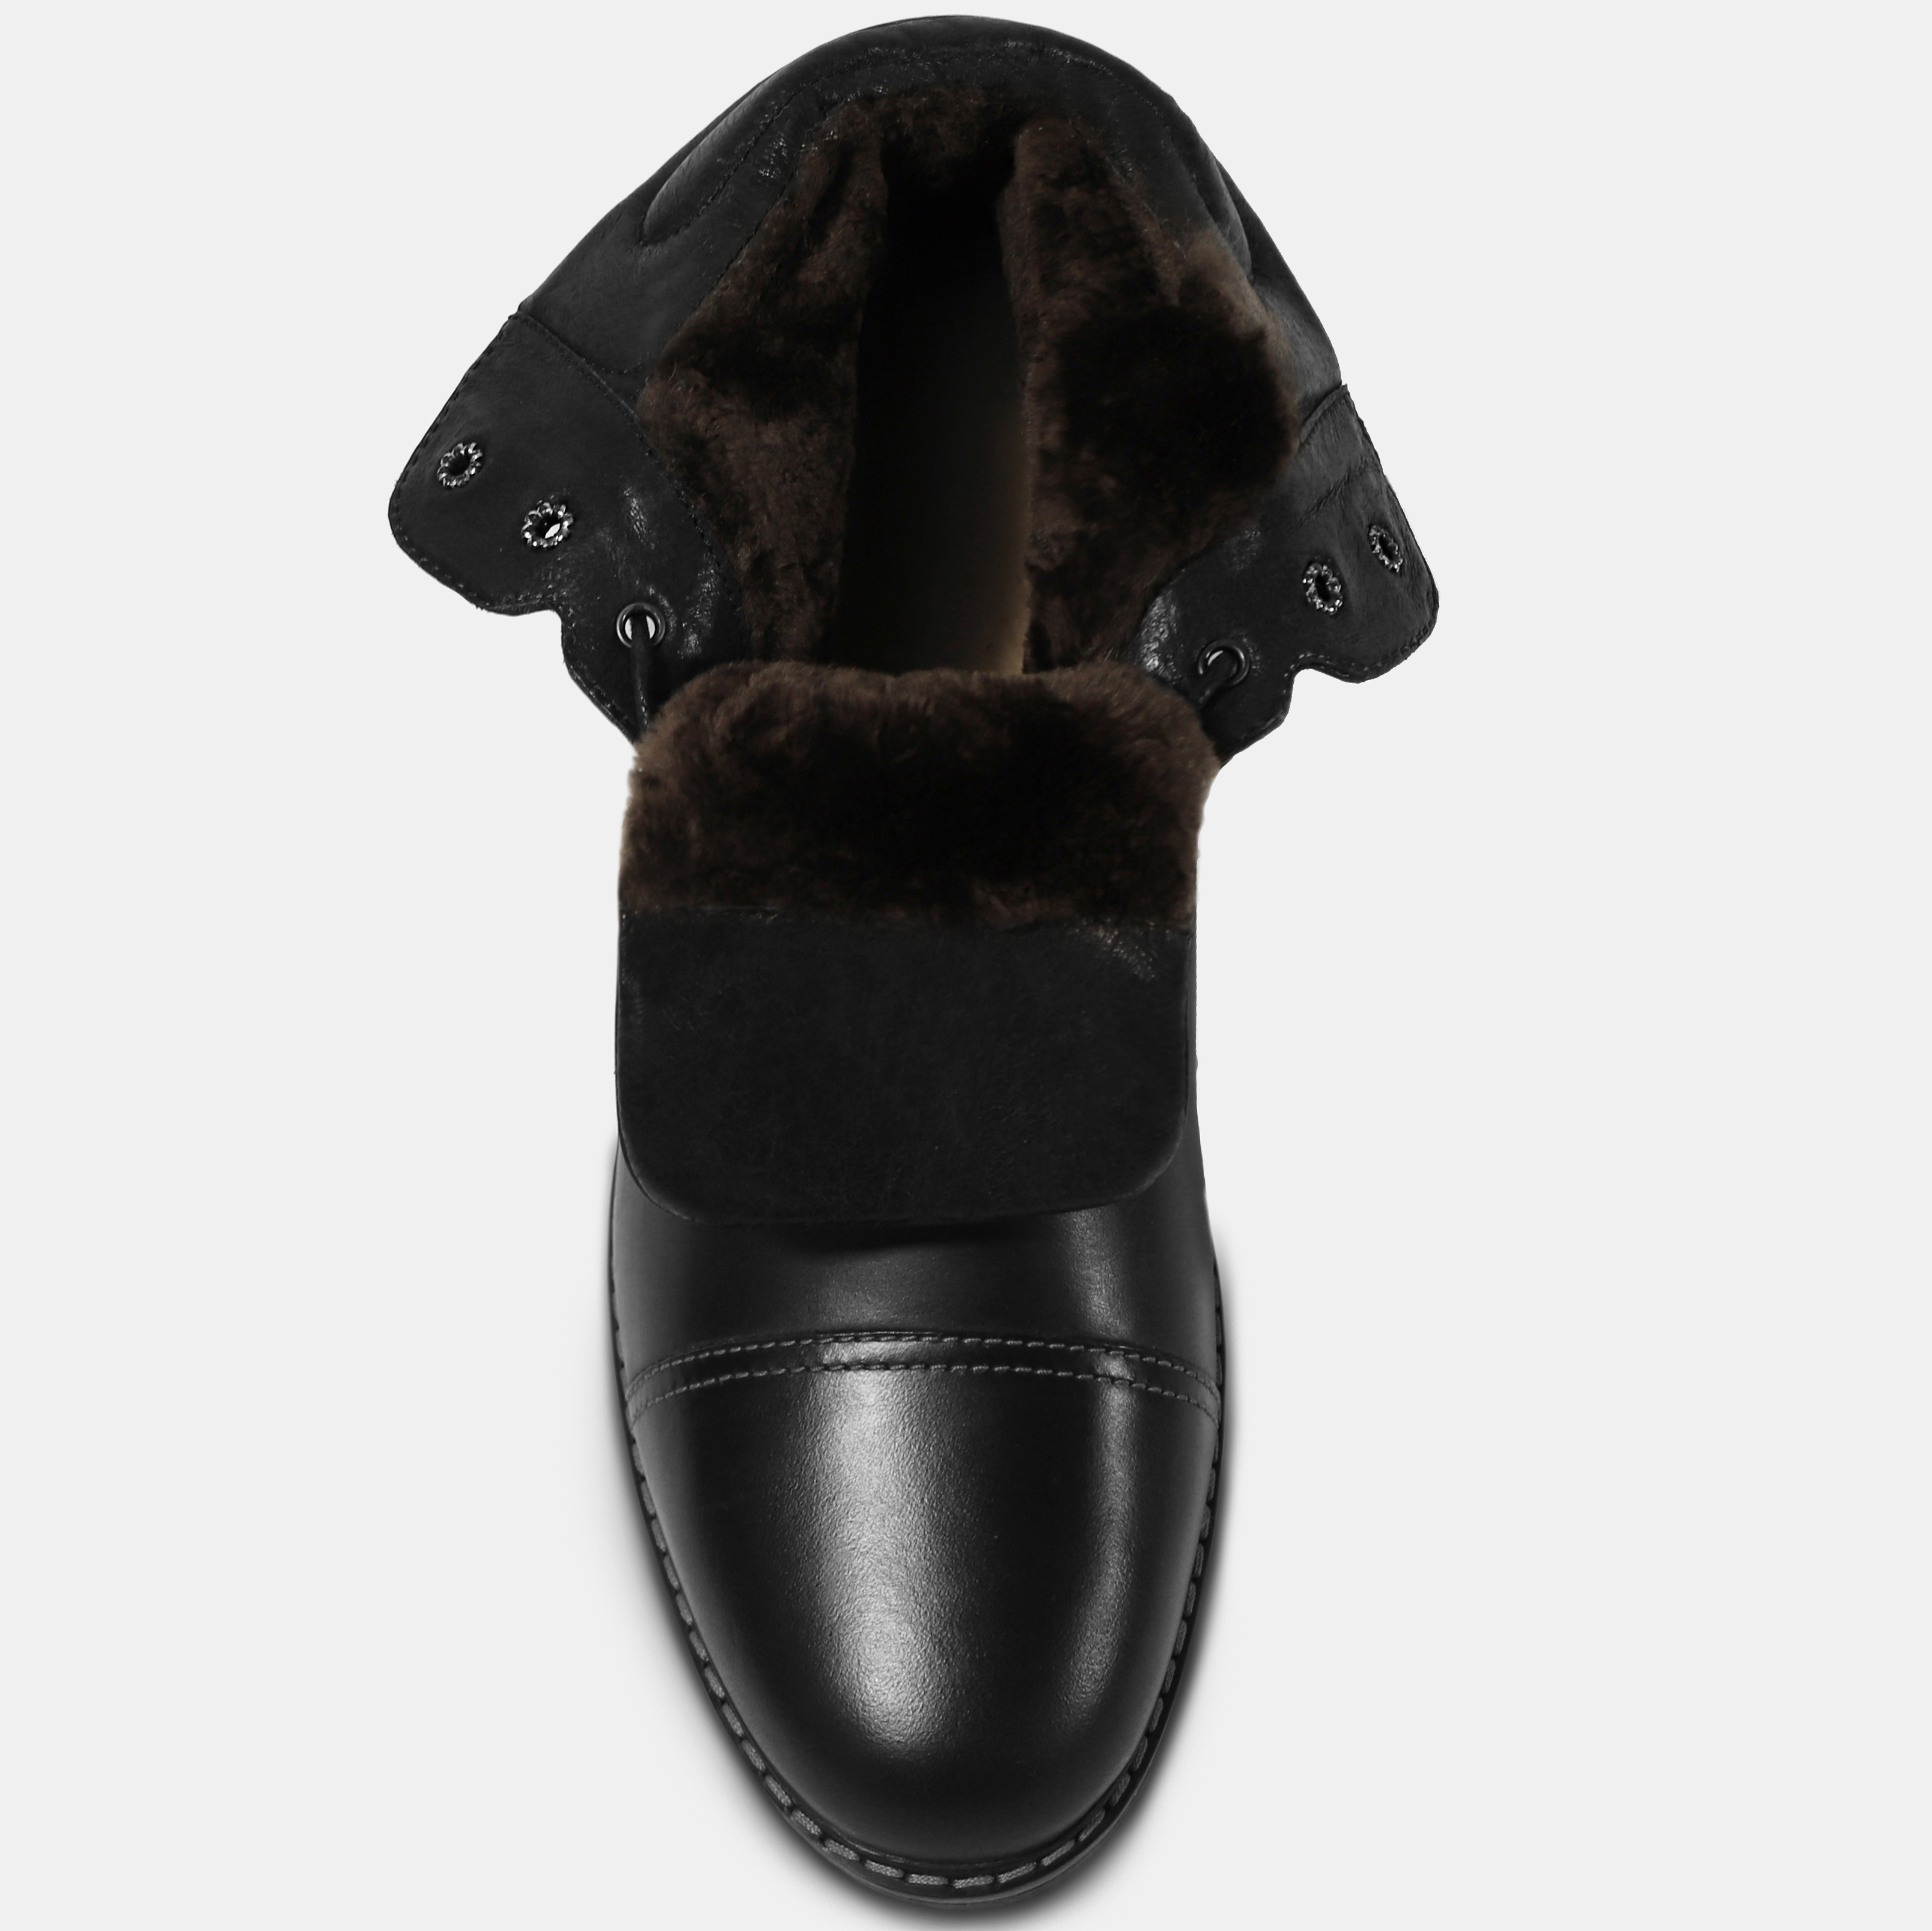 Ботинки мужские KLARK (цвет чёрный, натуральная кожа) — купить по цене 9090р. в интернет-магазине RALF RINGER